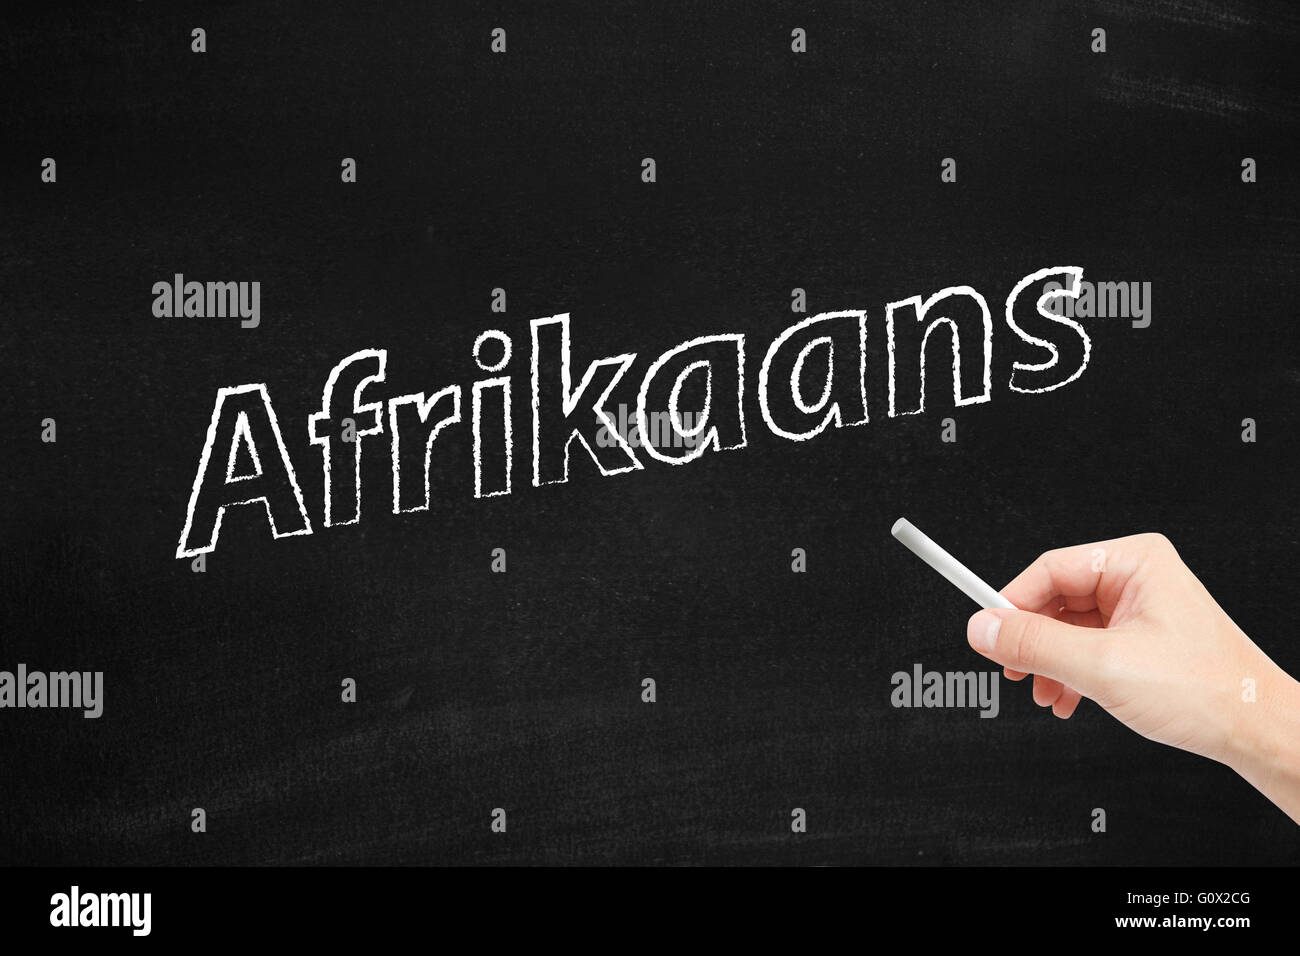 El idioma Afrikaans escrito en una pizarra Foto de stock